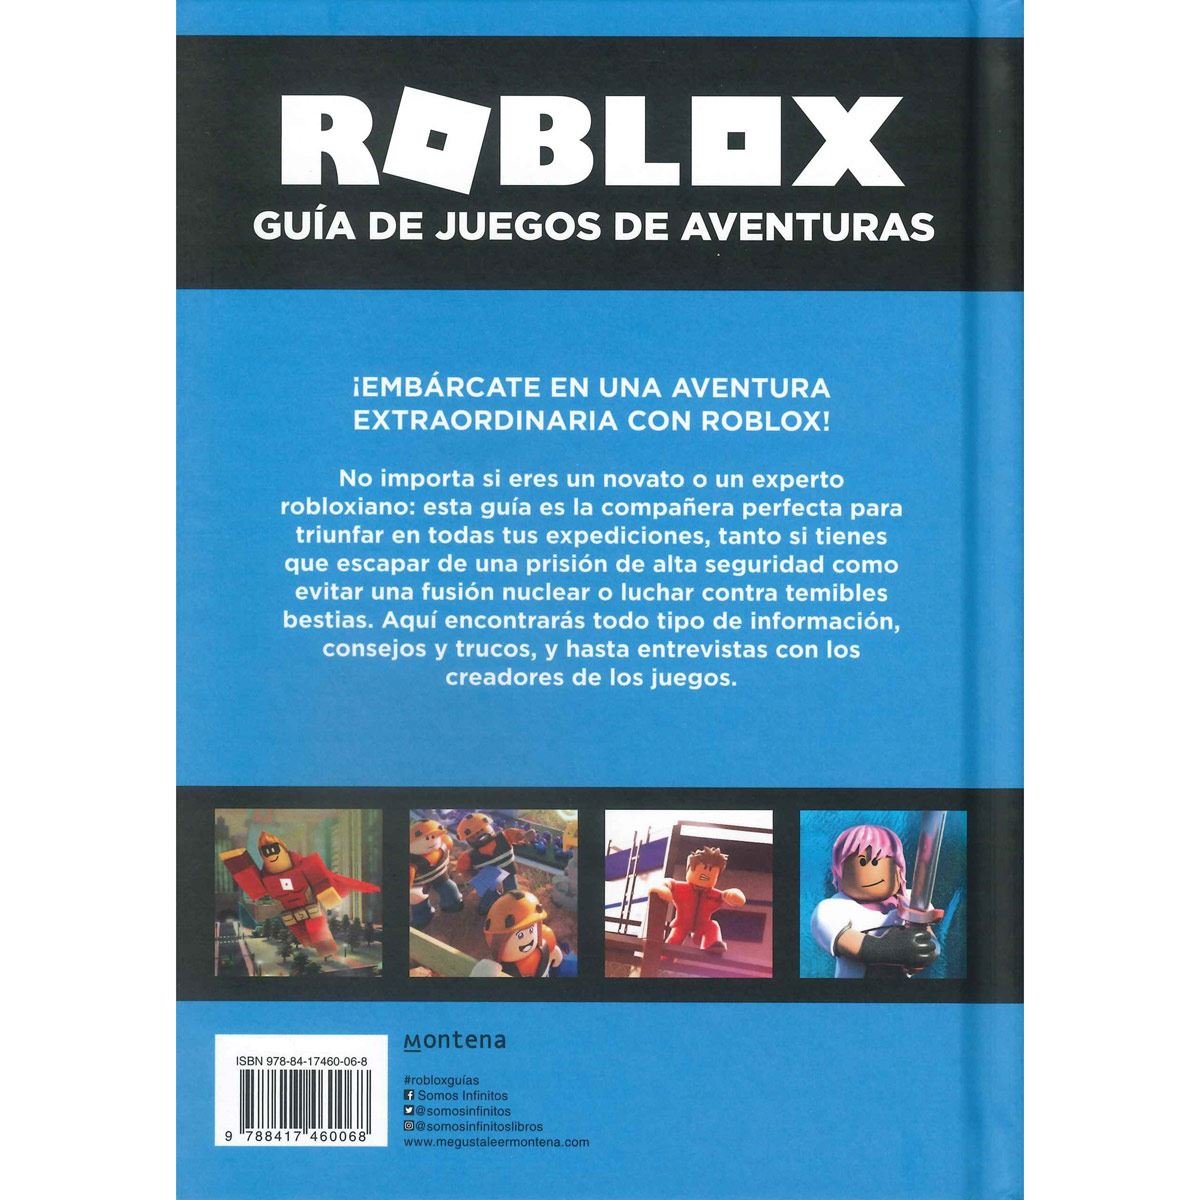 Roblox guía de juegos de aventuras